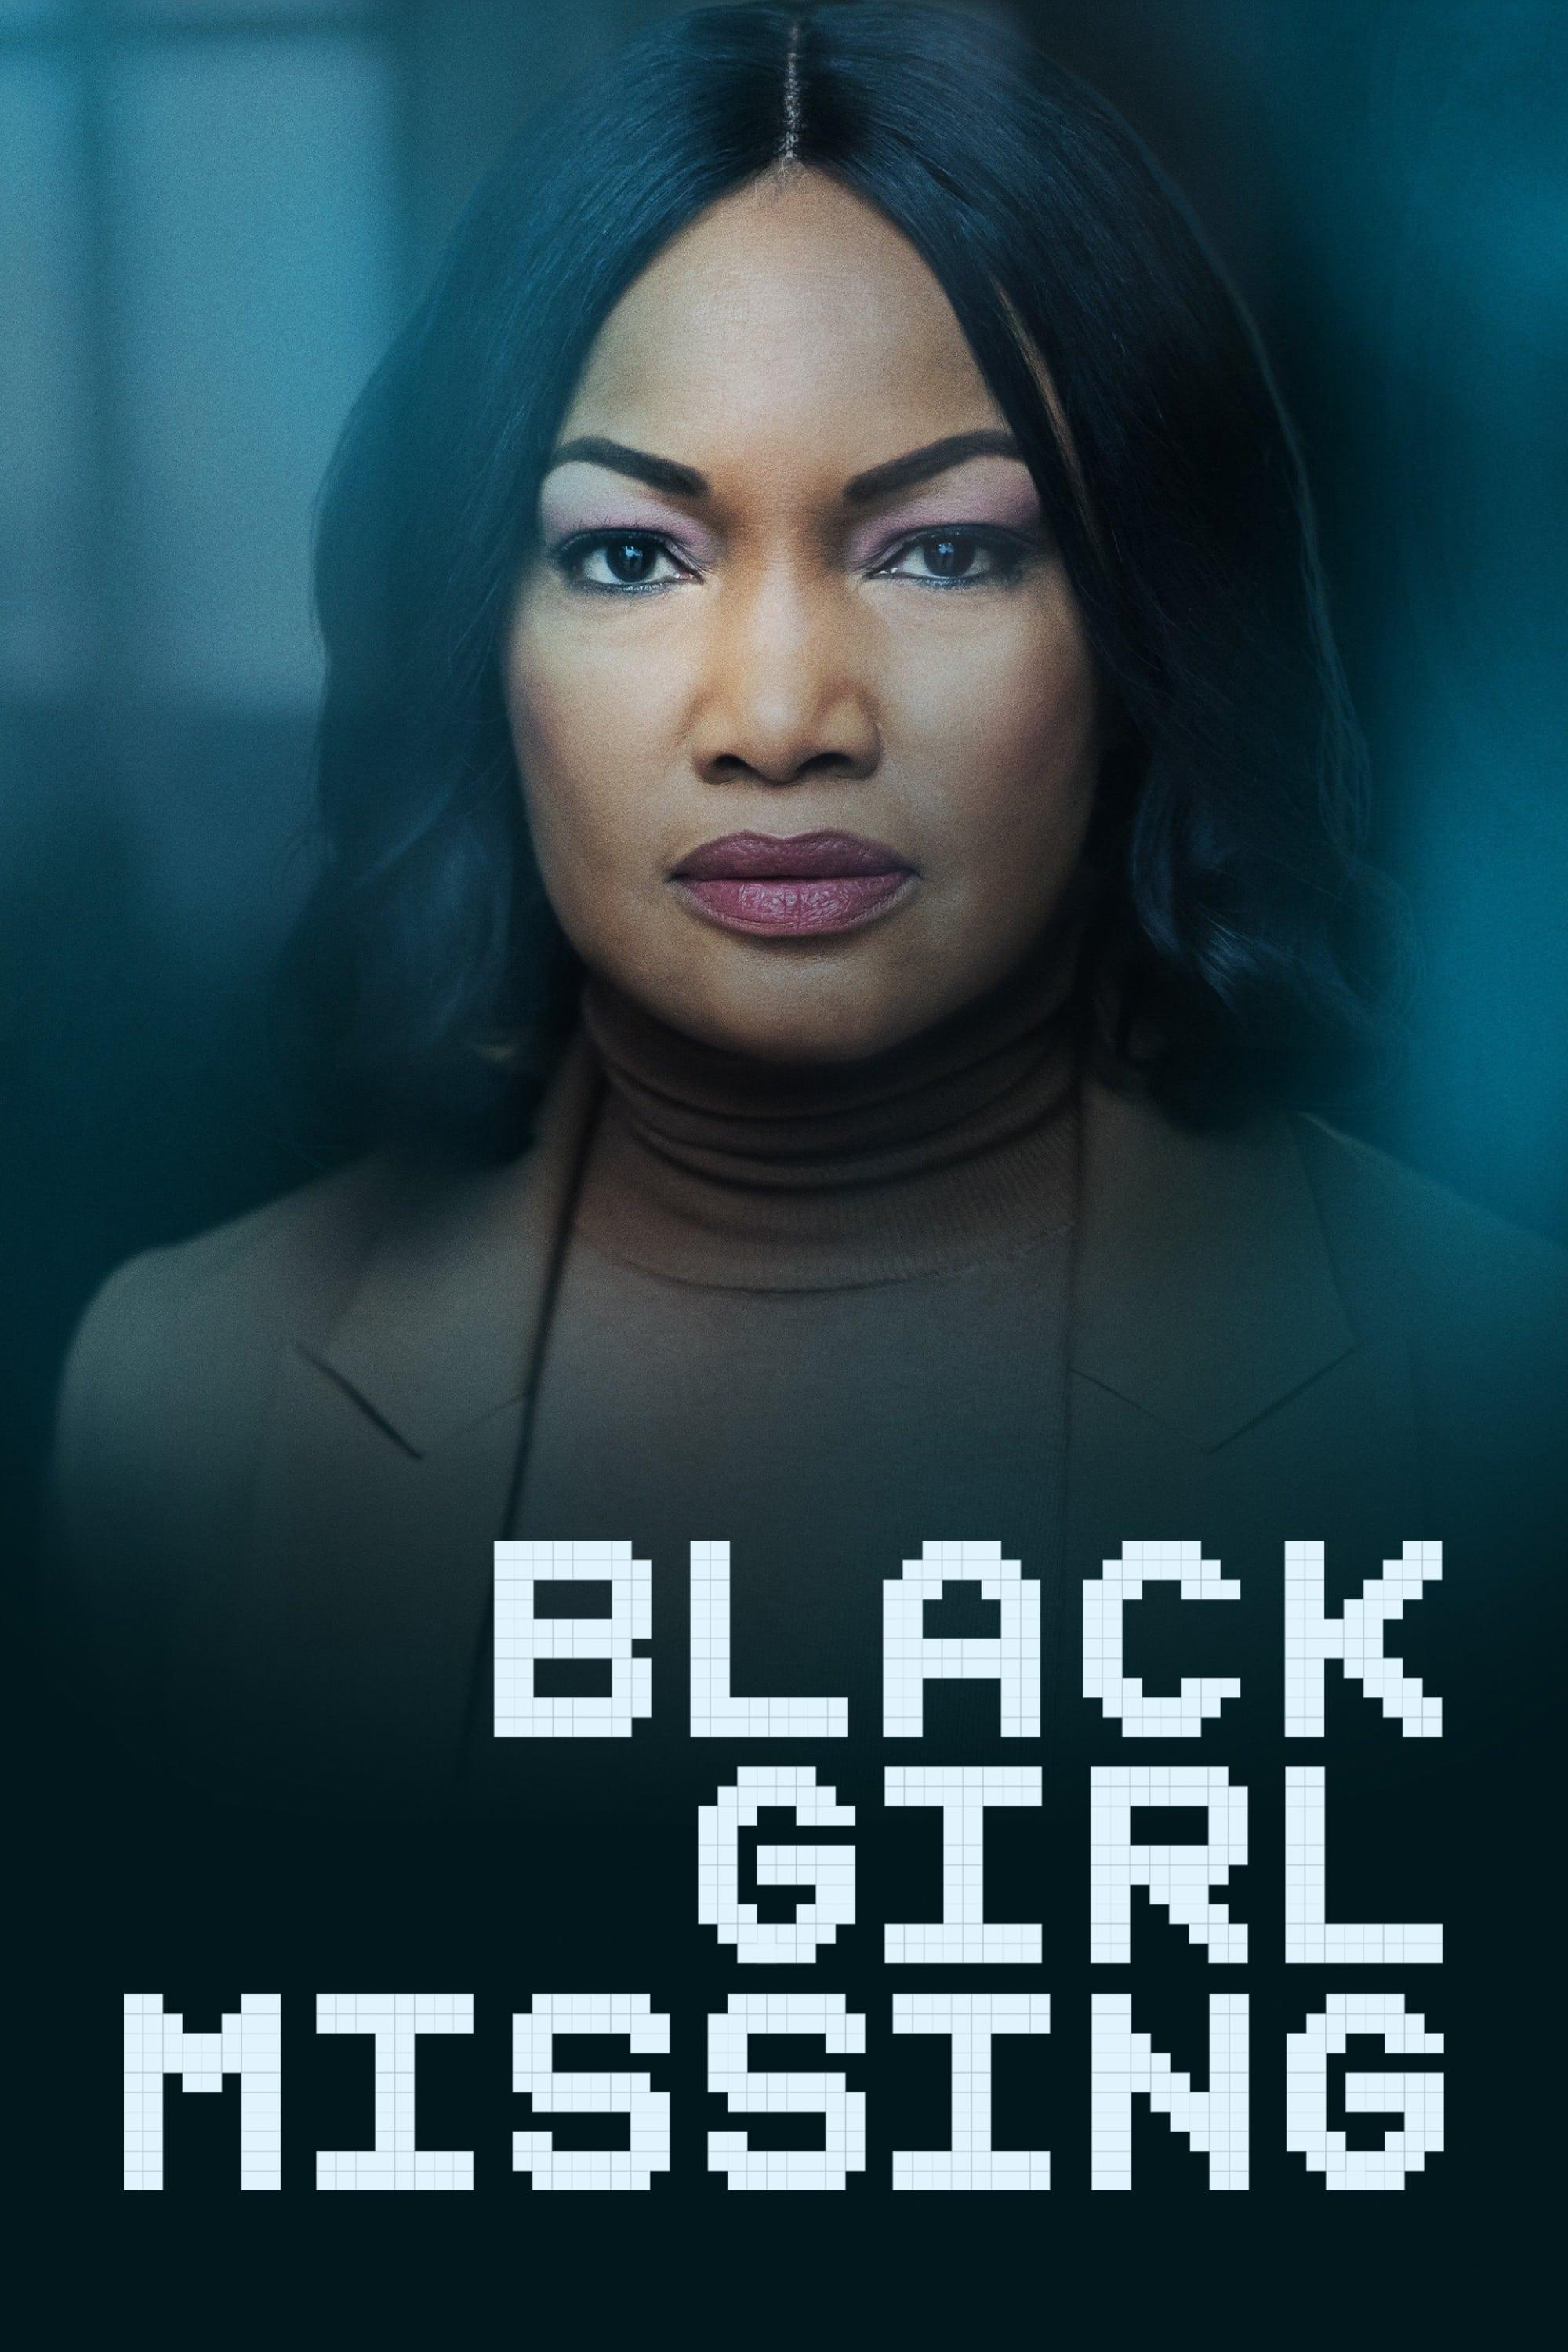 Black Girl Missing poster